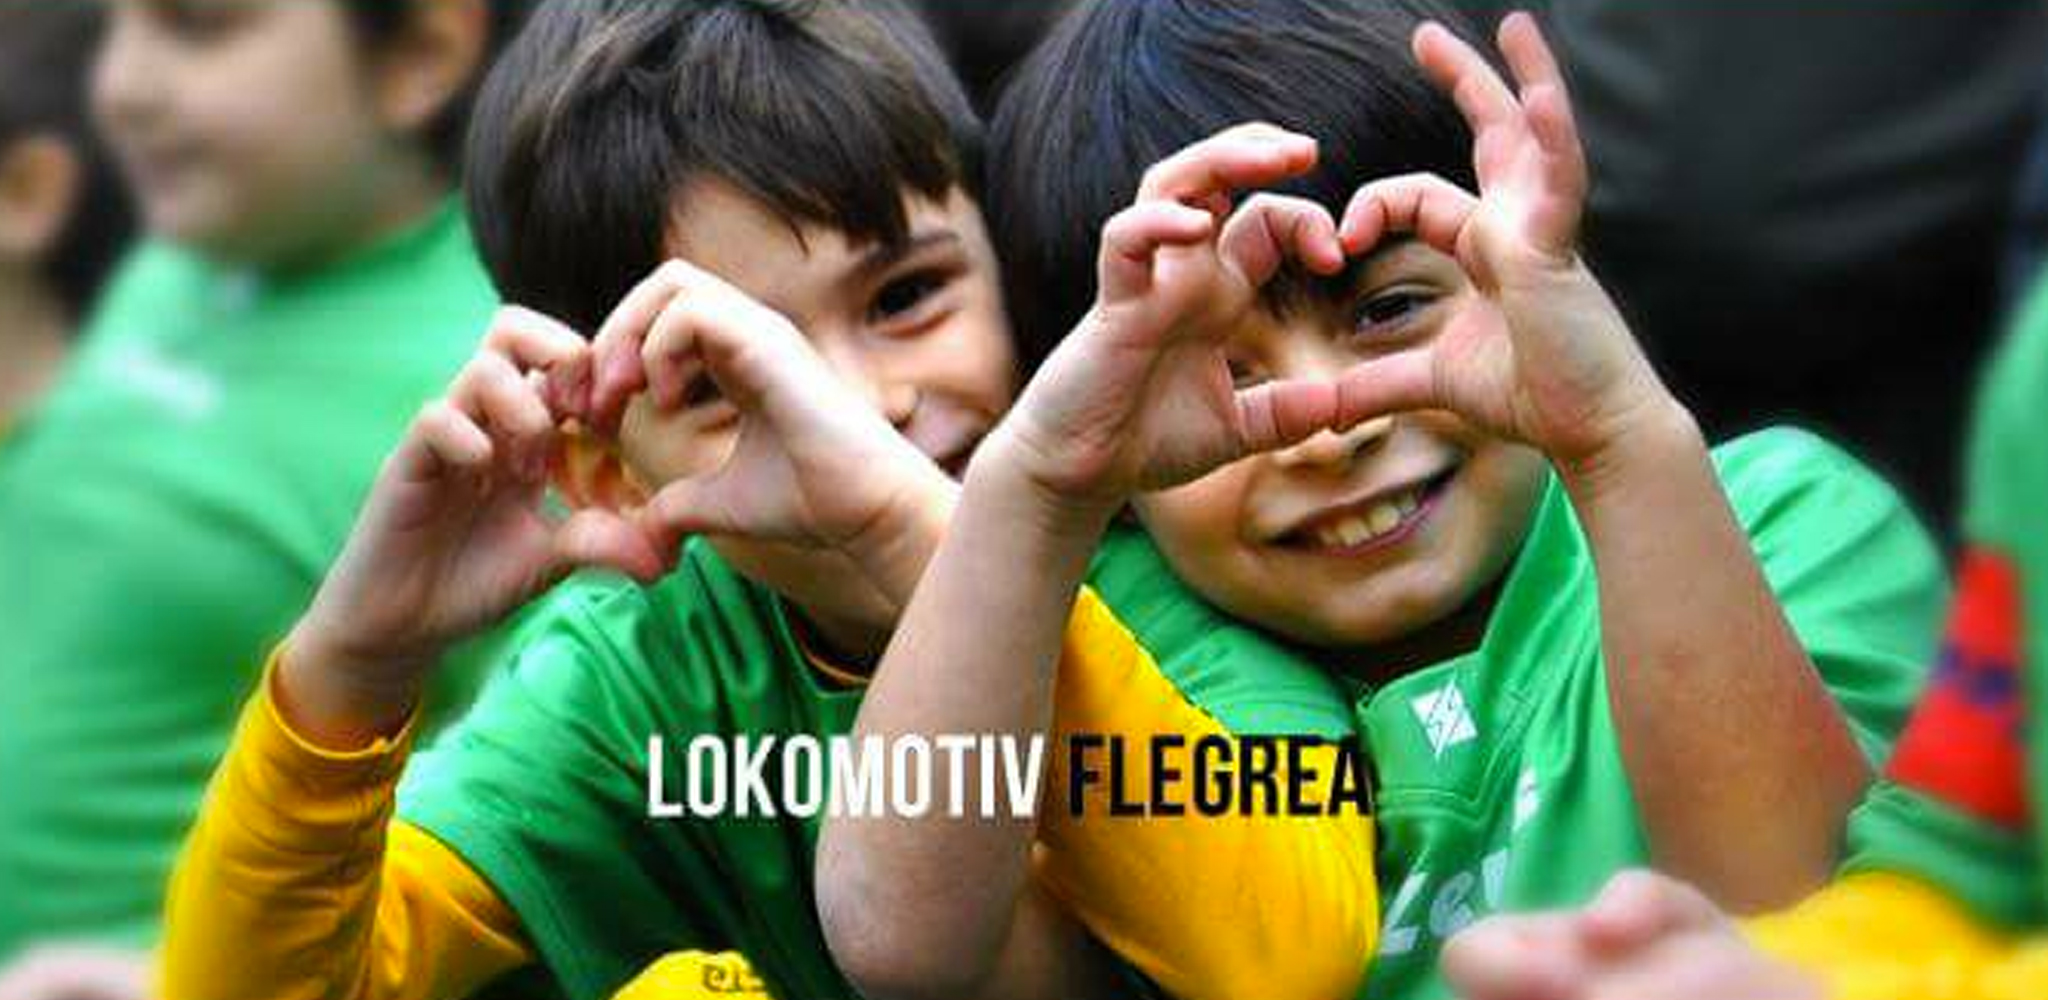 Support Lokomotiv Flegrea